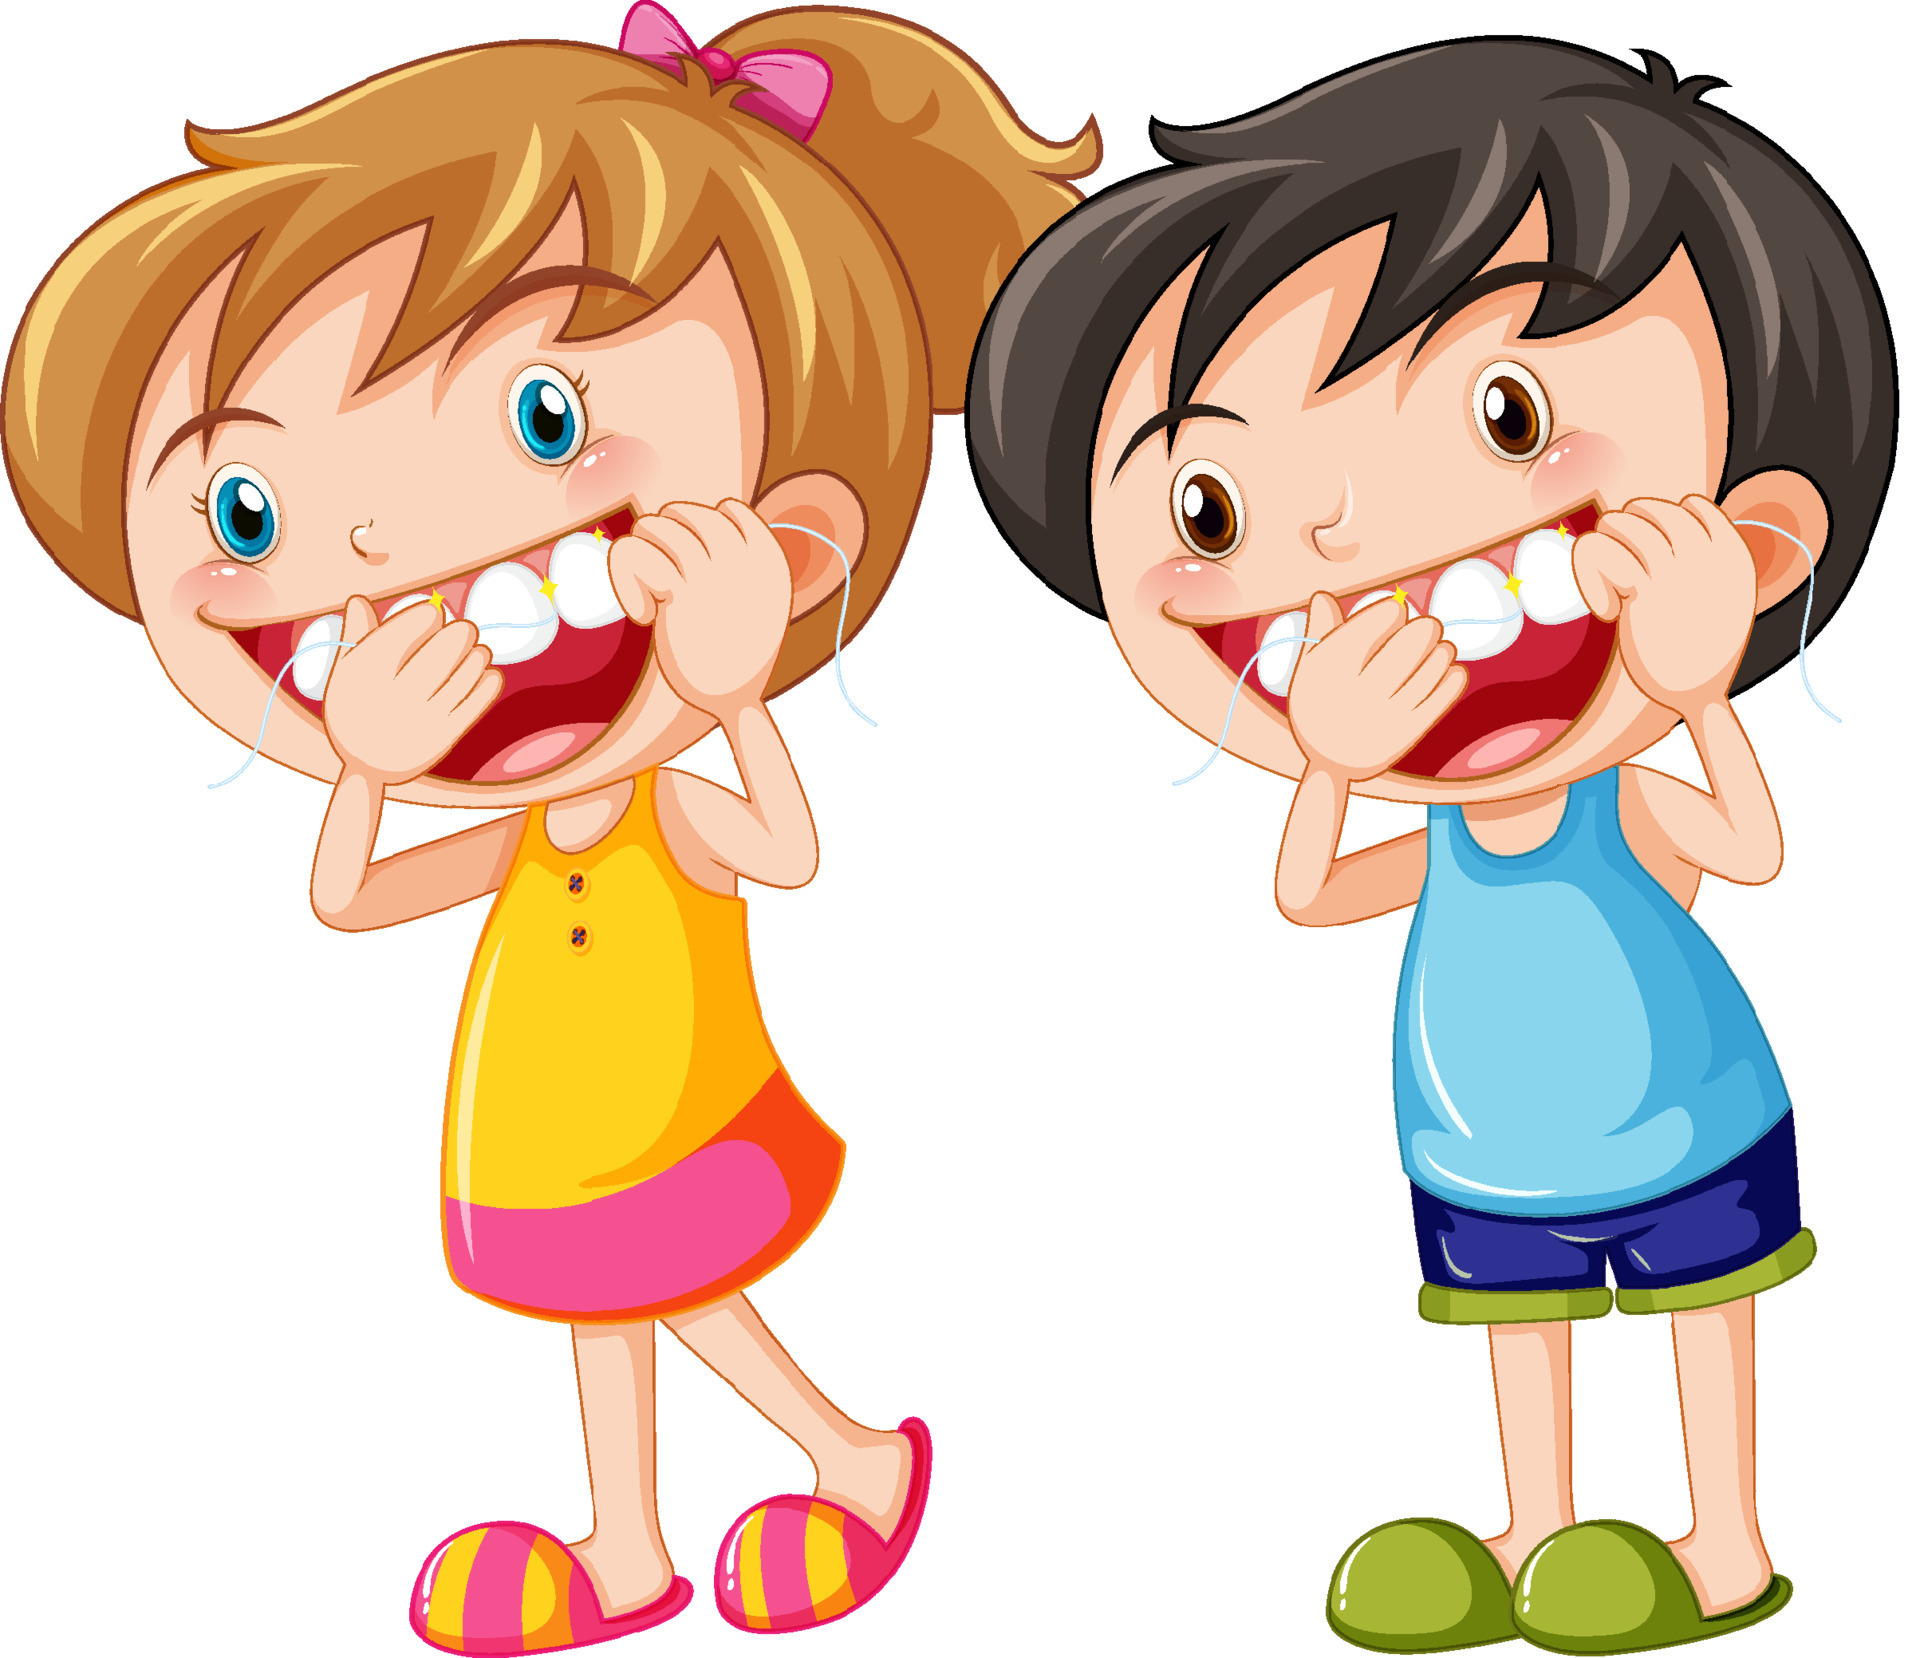 Cute kids cartoon character flossing teeth 8334622 Vector Art at Vecteezy